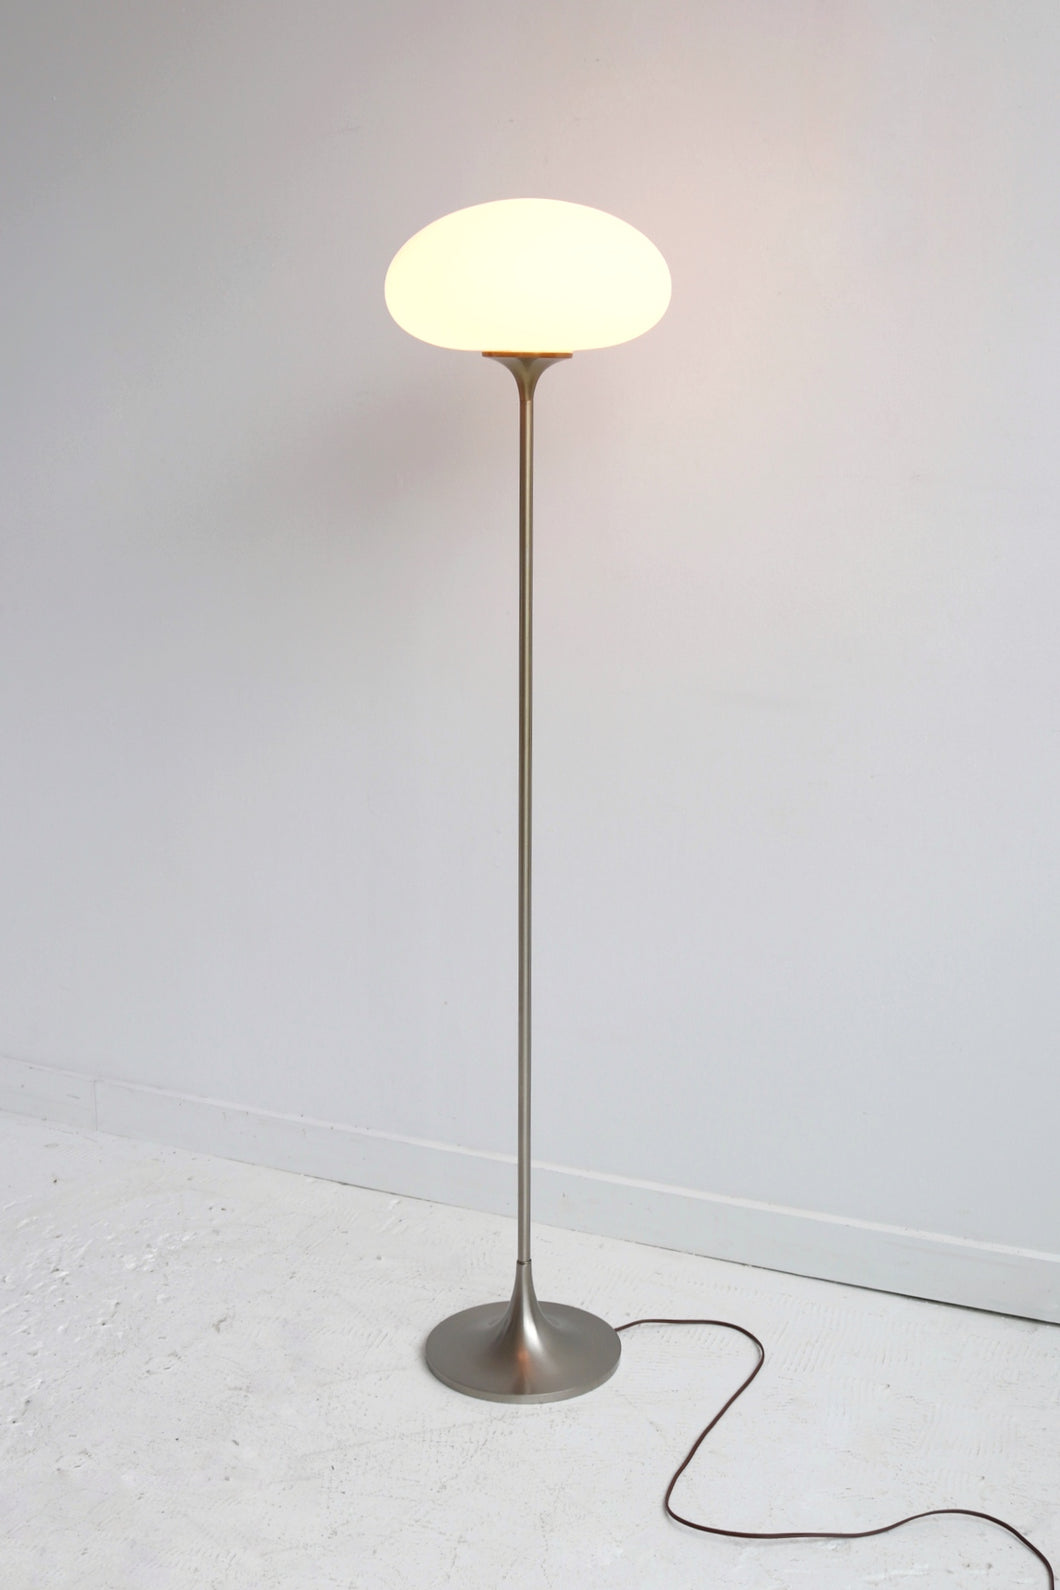 Mushroom Lamp By Laurel Lamp Co.